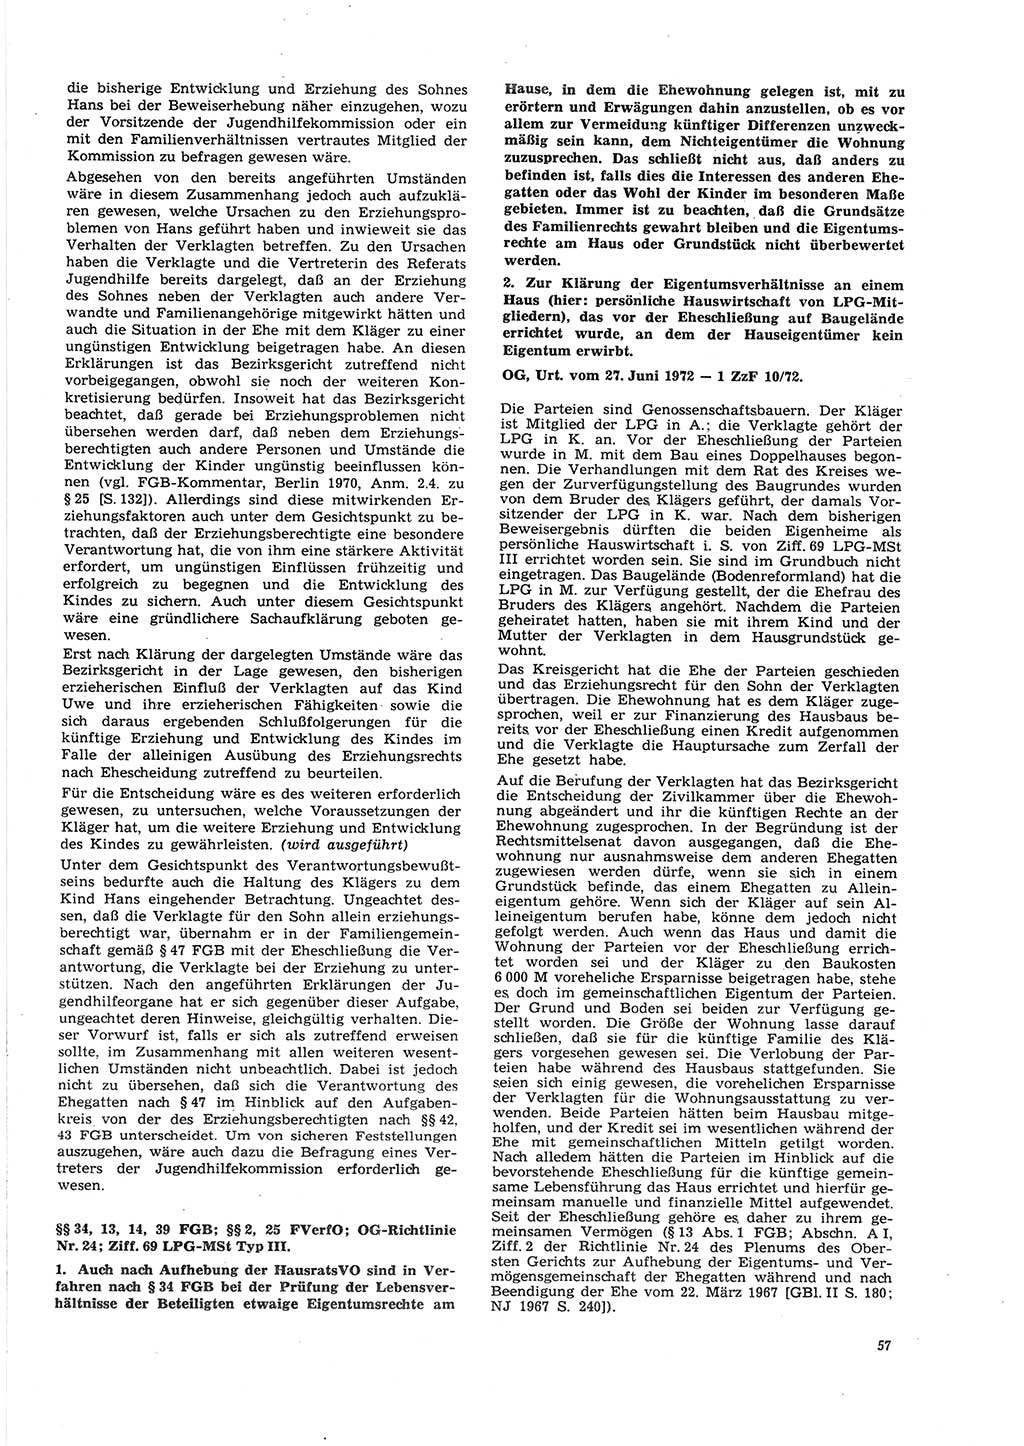 Neue Justiz (NJ), Zeitschrift für Recht und Rechtswissenschaft [Deutsche Demokratische Republik (DDR)], 27. Jahrgang 1973, Seite 57 (NJ DDR 1973, S. 57)